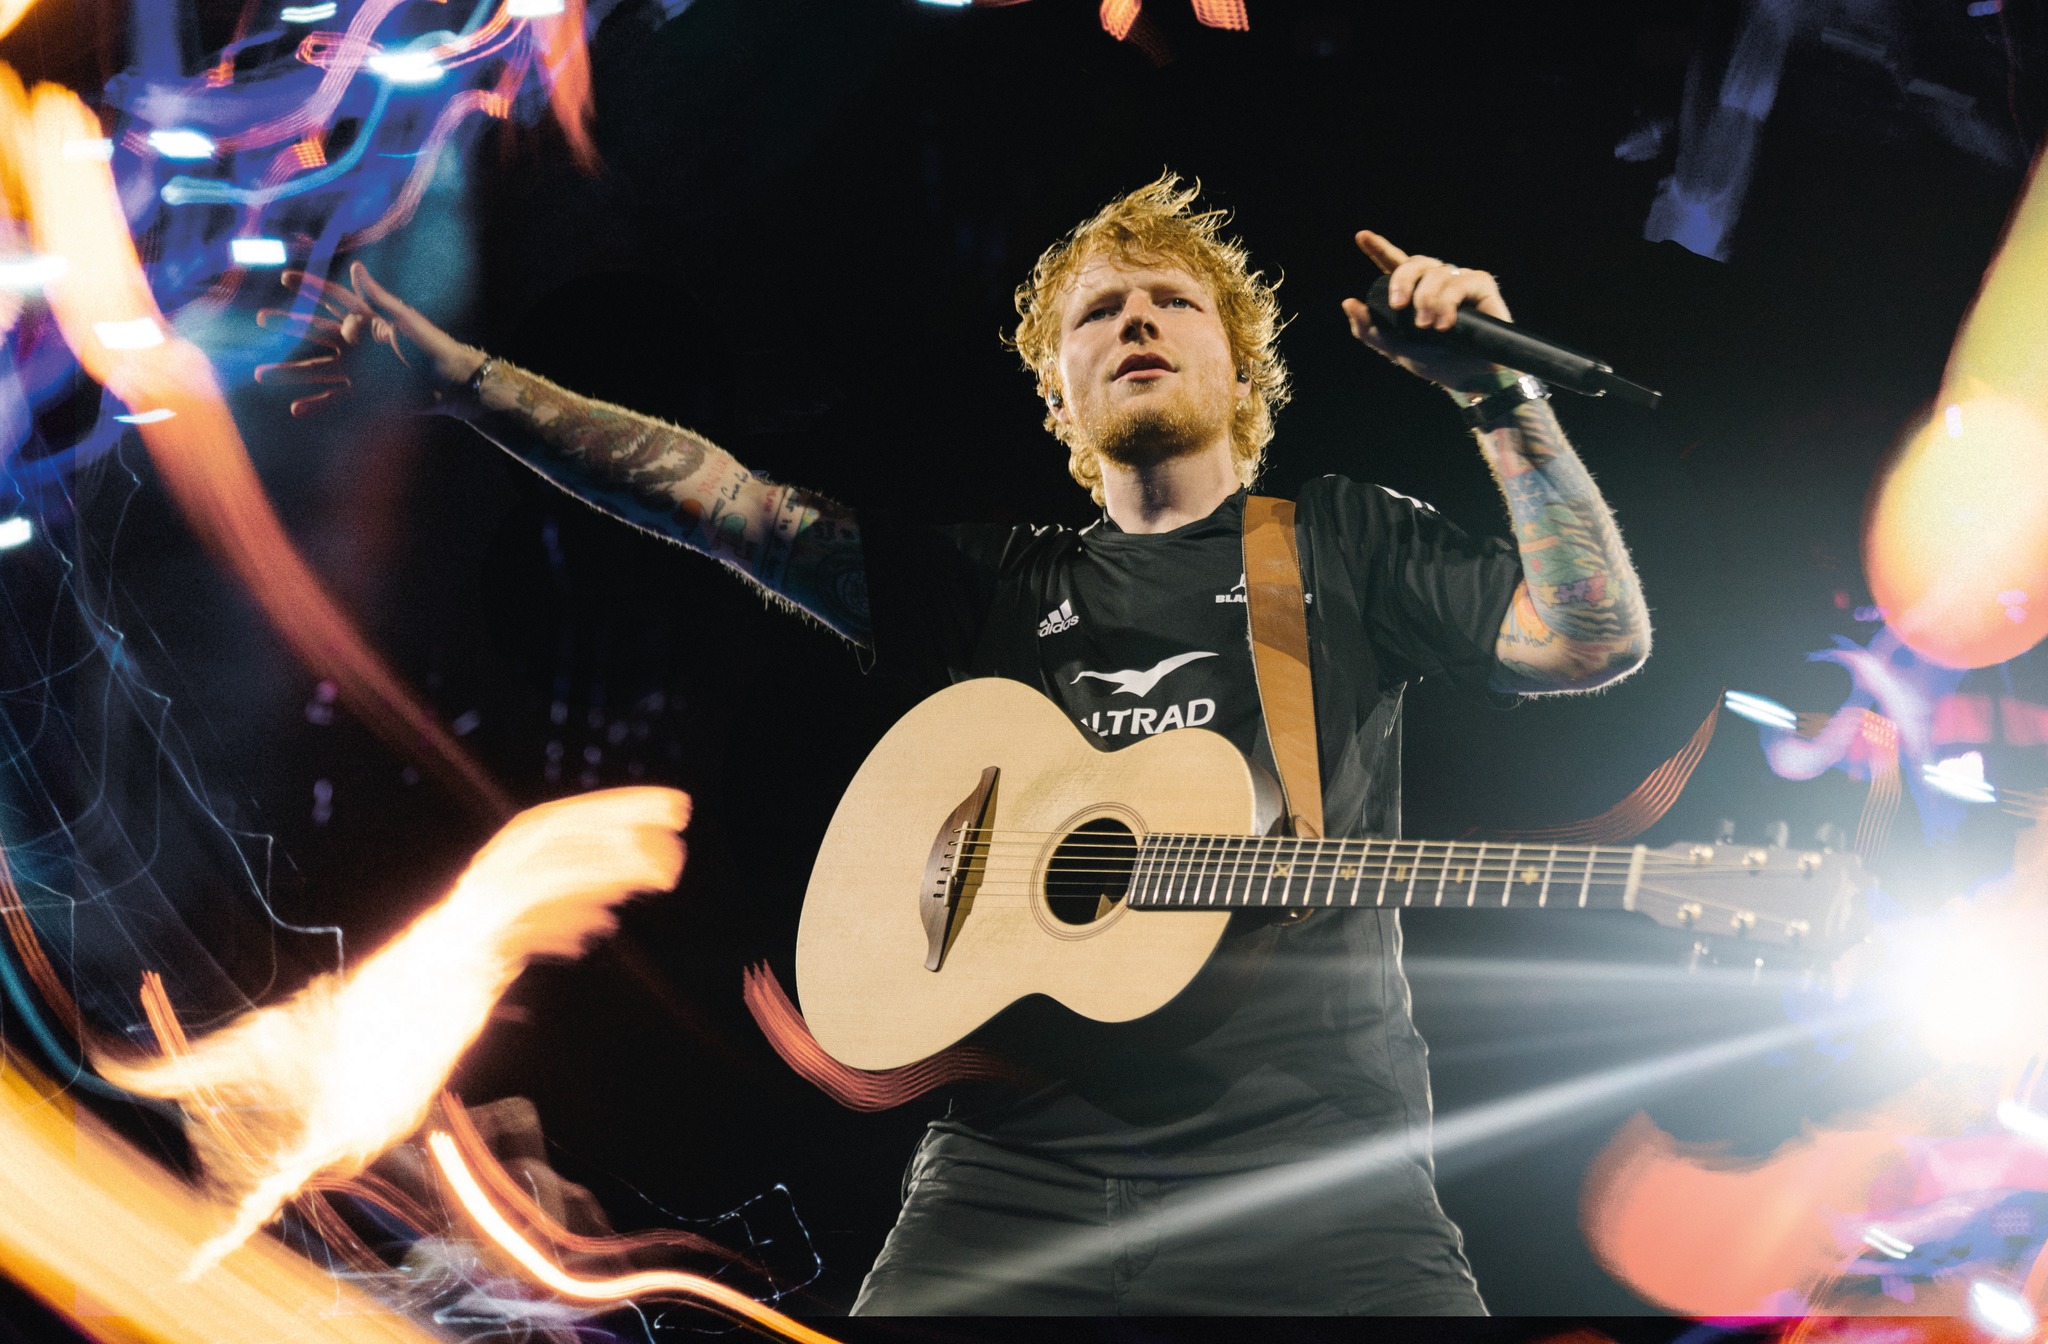 Mega koncerty Eda Sheerana v Hradci Králové už tento víkend nabídnou shows světových rozměrů, vystoupí i Ewa Farna a Calum Scott